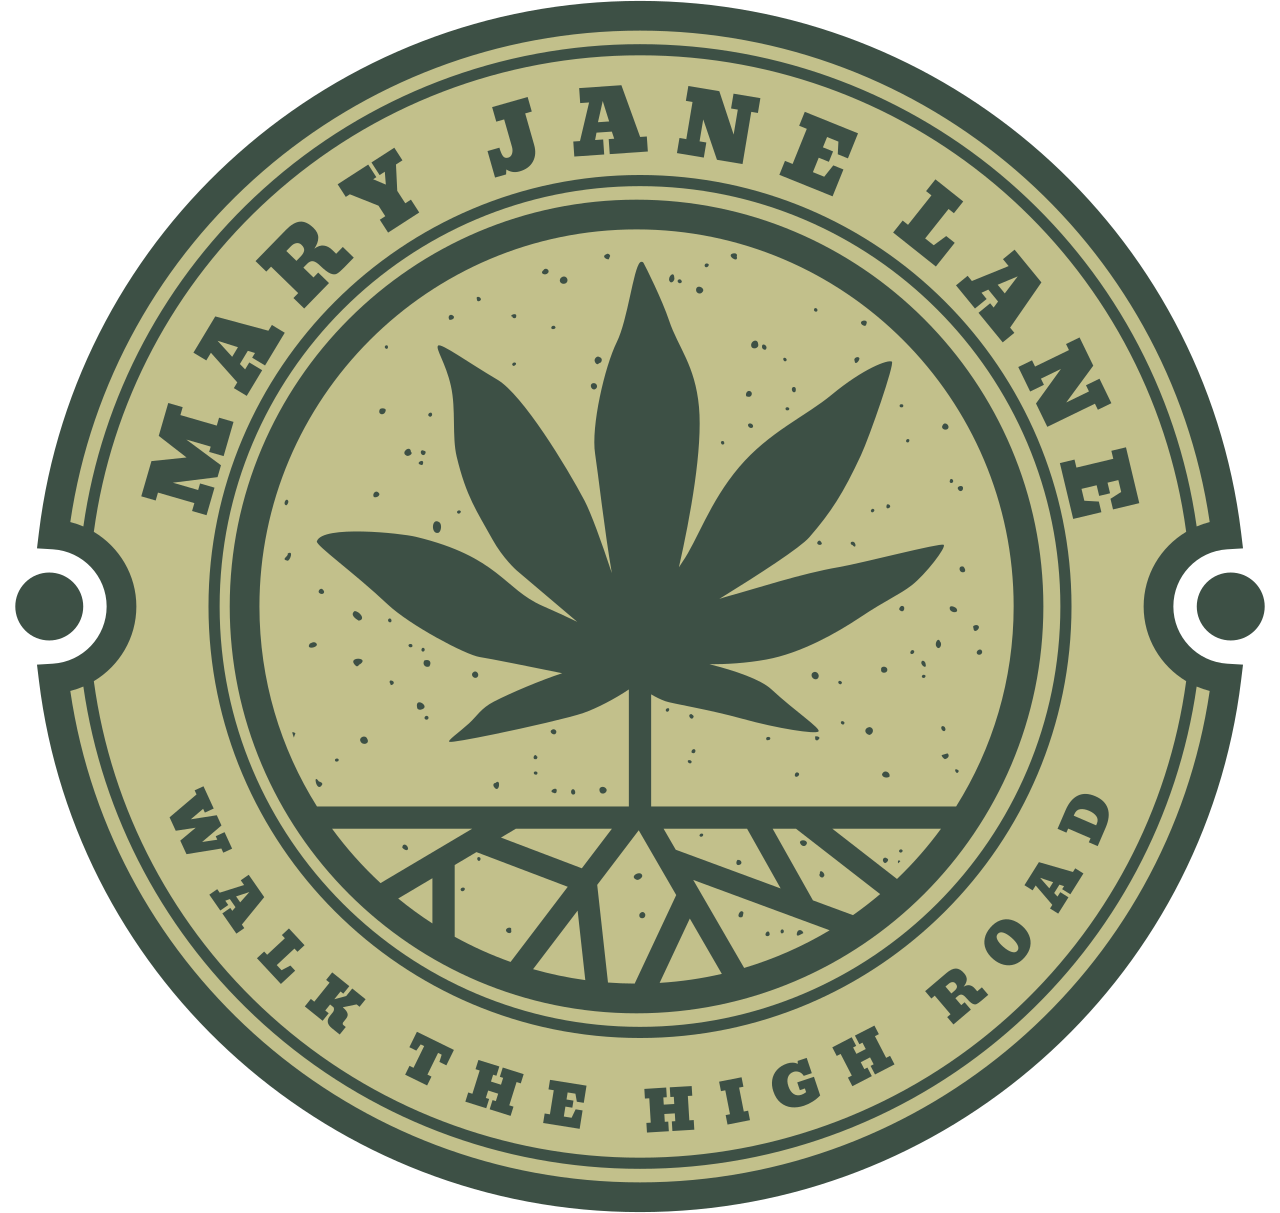 MARY JANE LANE's logo